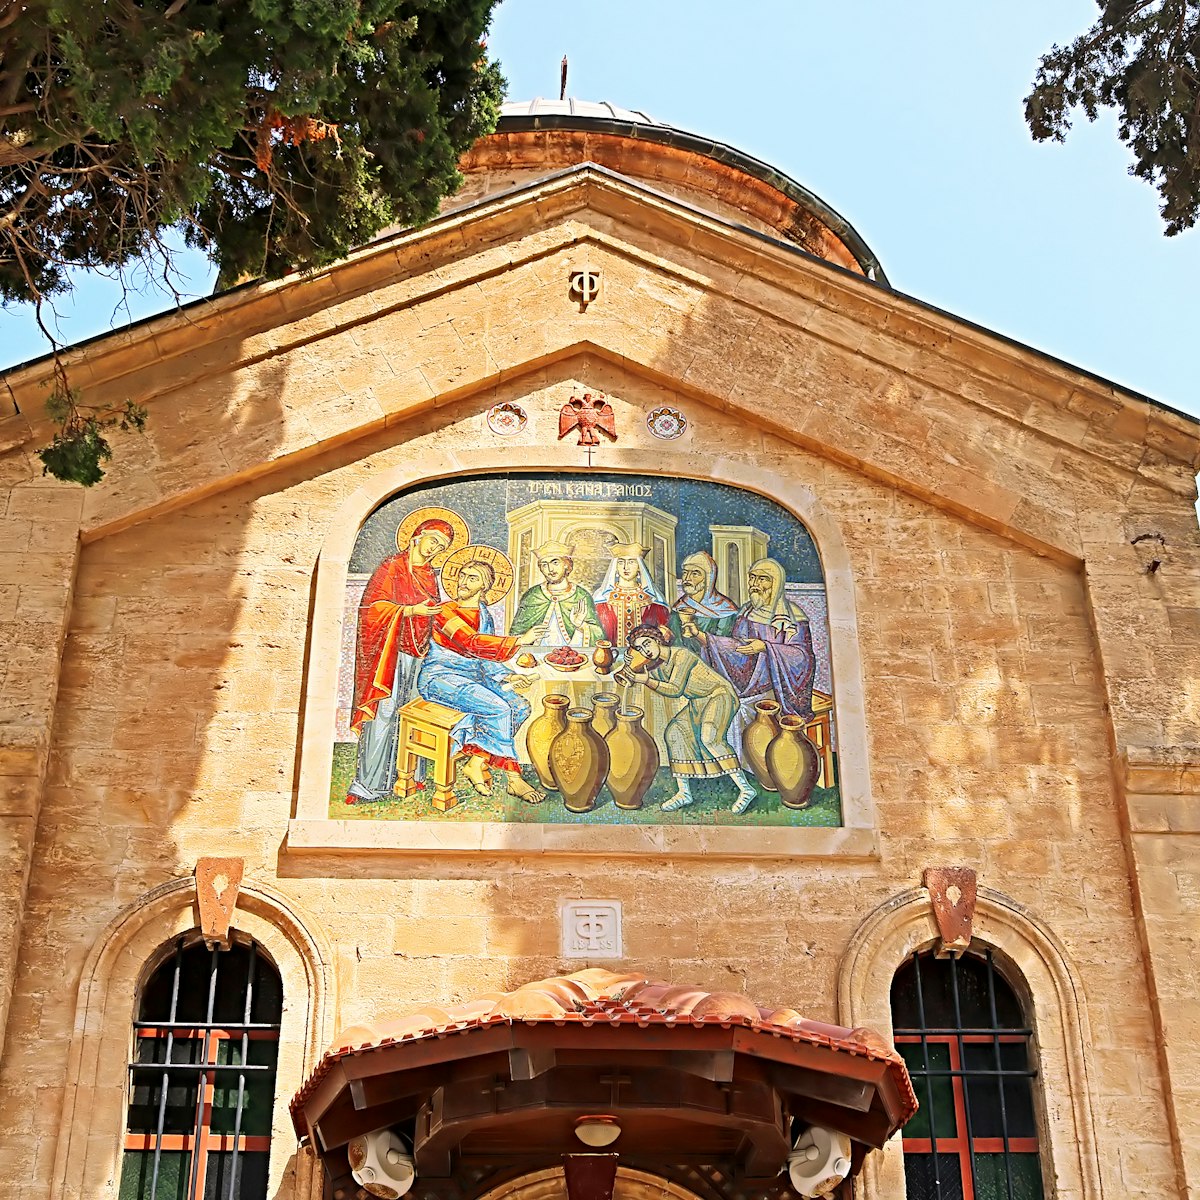 The Cana Greek Orthodox Wedding Church in Cana of Galilee, Kfar Kana, Israel.